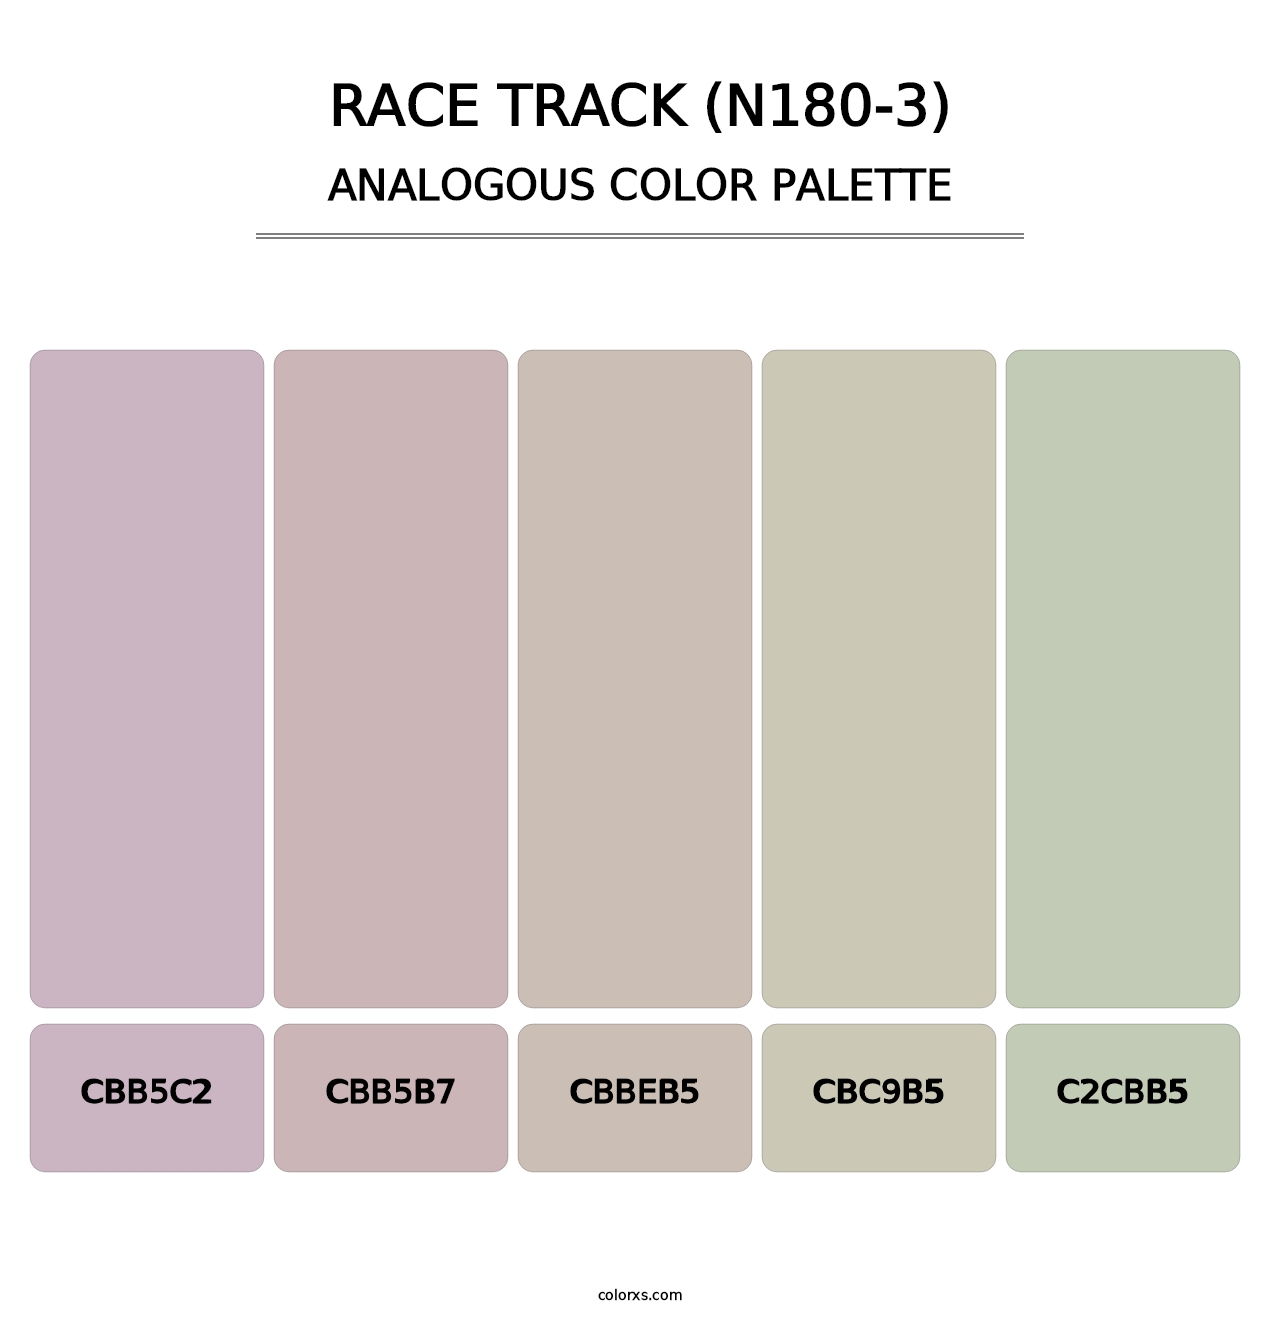 Race Track (N180-3) - Analogous Color Palette